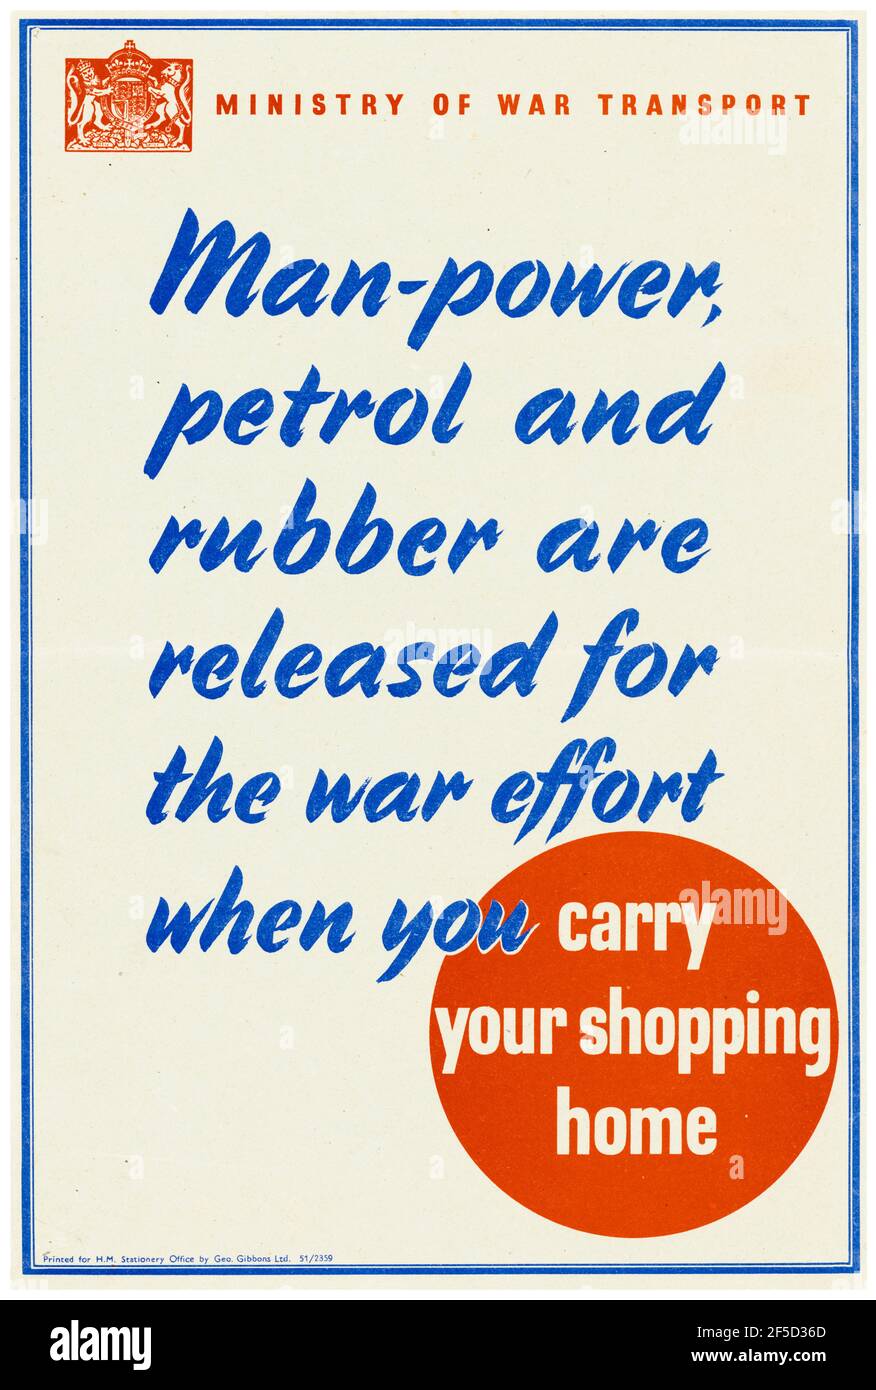 British, WW2 transport poster, main-d'oeuvre, l'essence et le caoutchouc sont libérés pour l'effort de guerre quand vous portez votre maison de shopping, affiche, 1942-1945 Banque D'Images